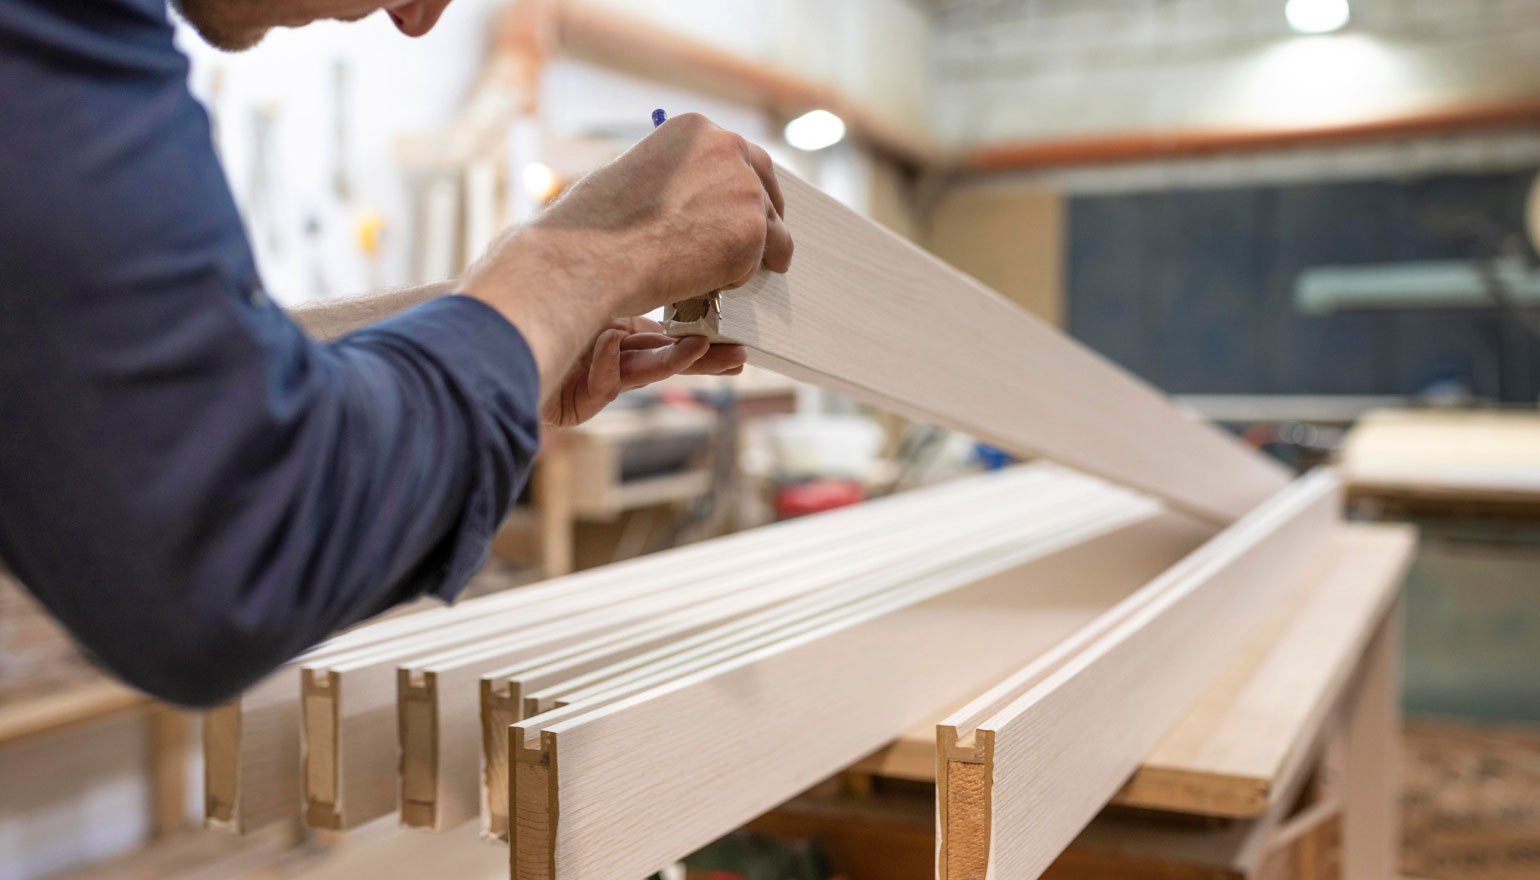 Taller de carpintería especializado en marcos para ventanas en Barcelona